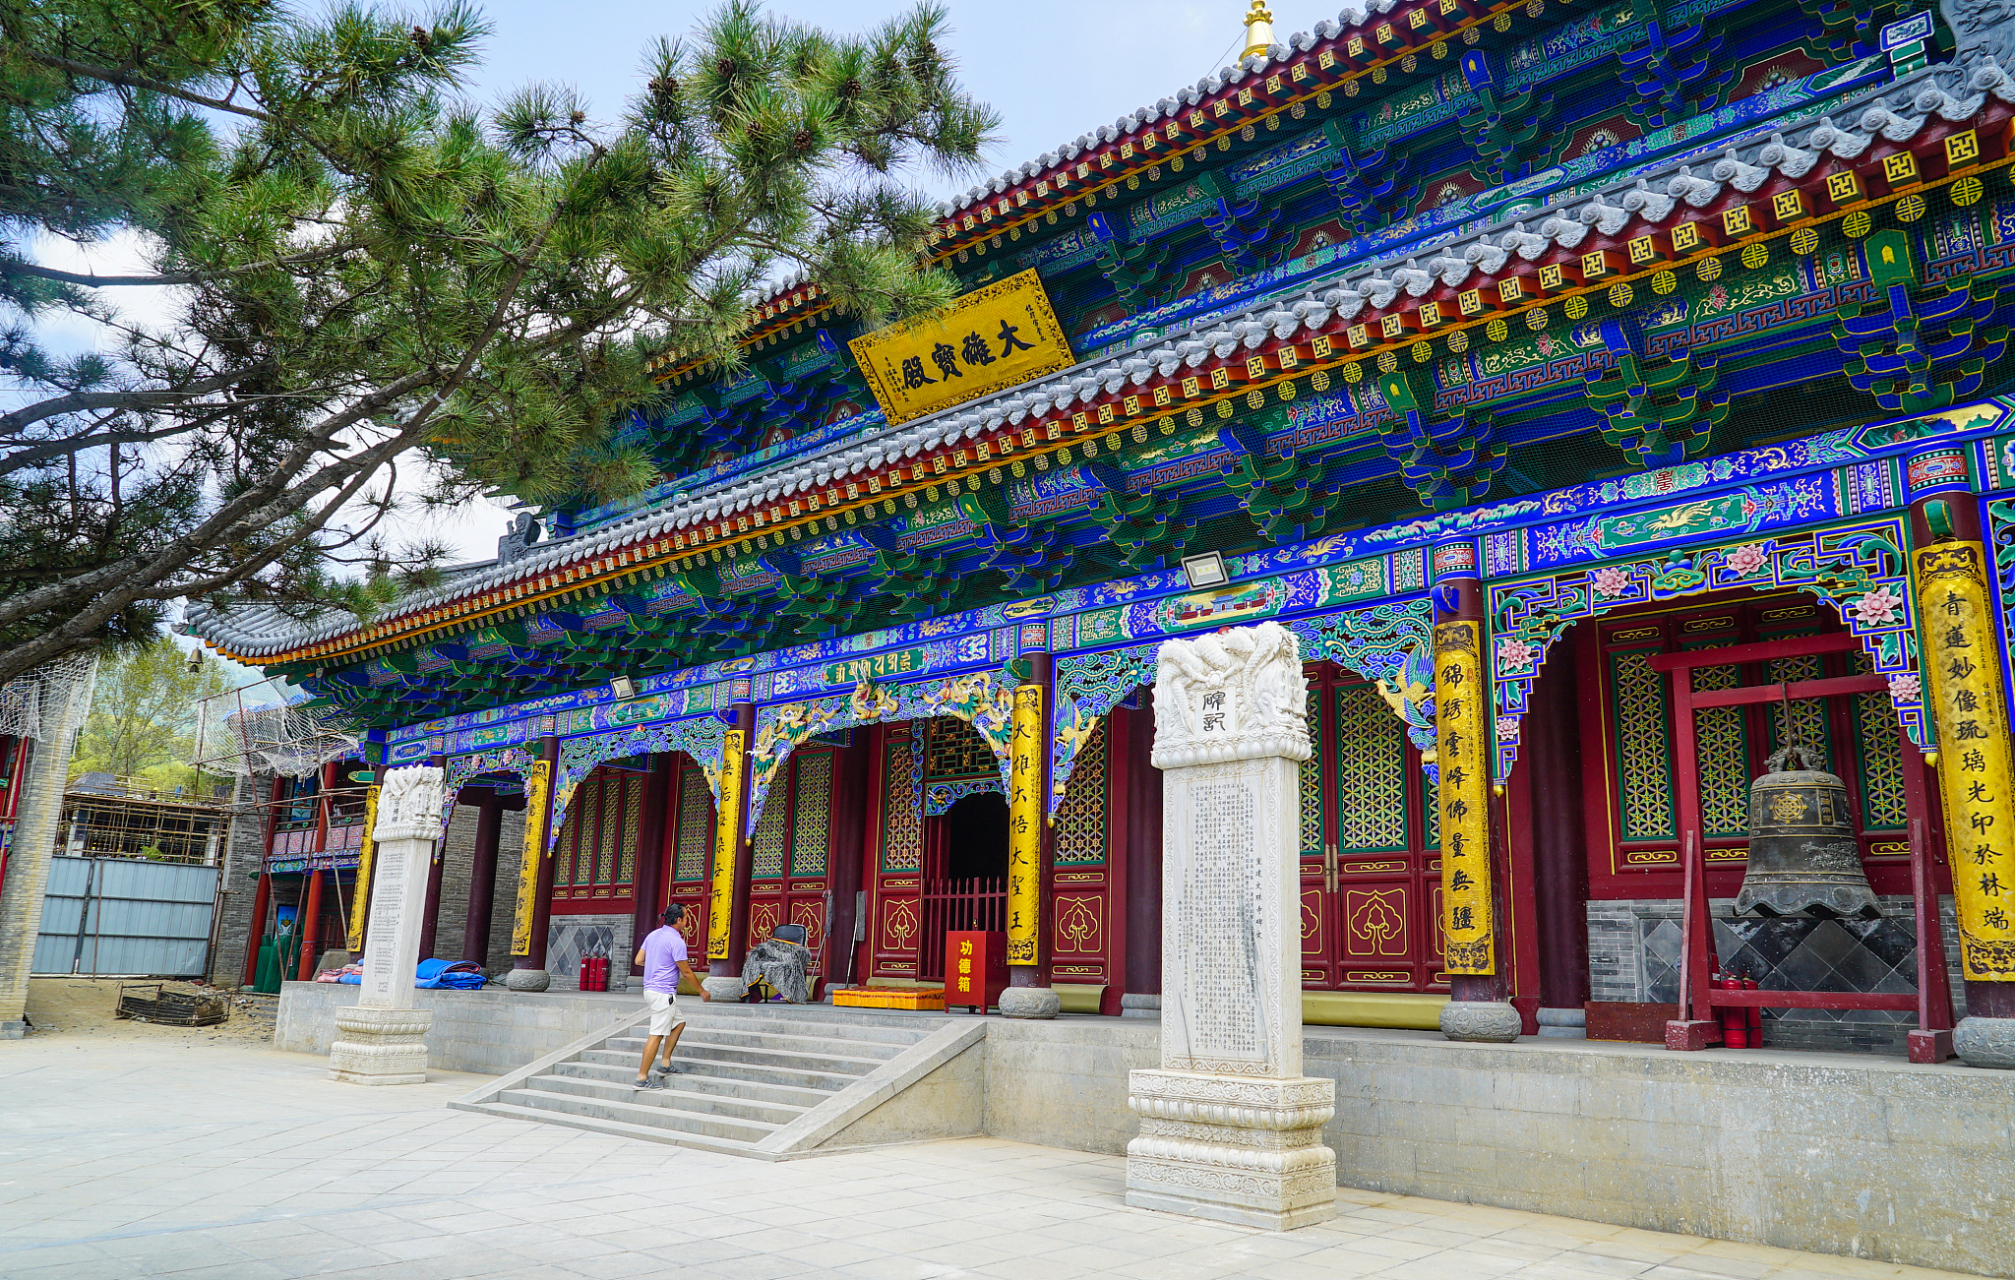 海藏寺位于中国西北甘肃省武威市,是河西走廊上的一颗璀璨明珠,充满了